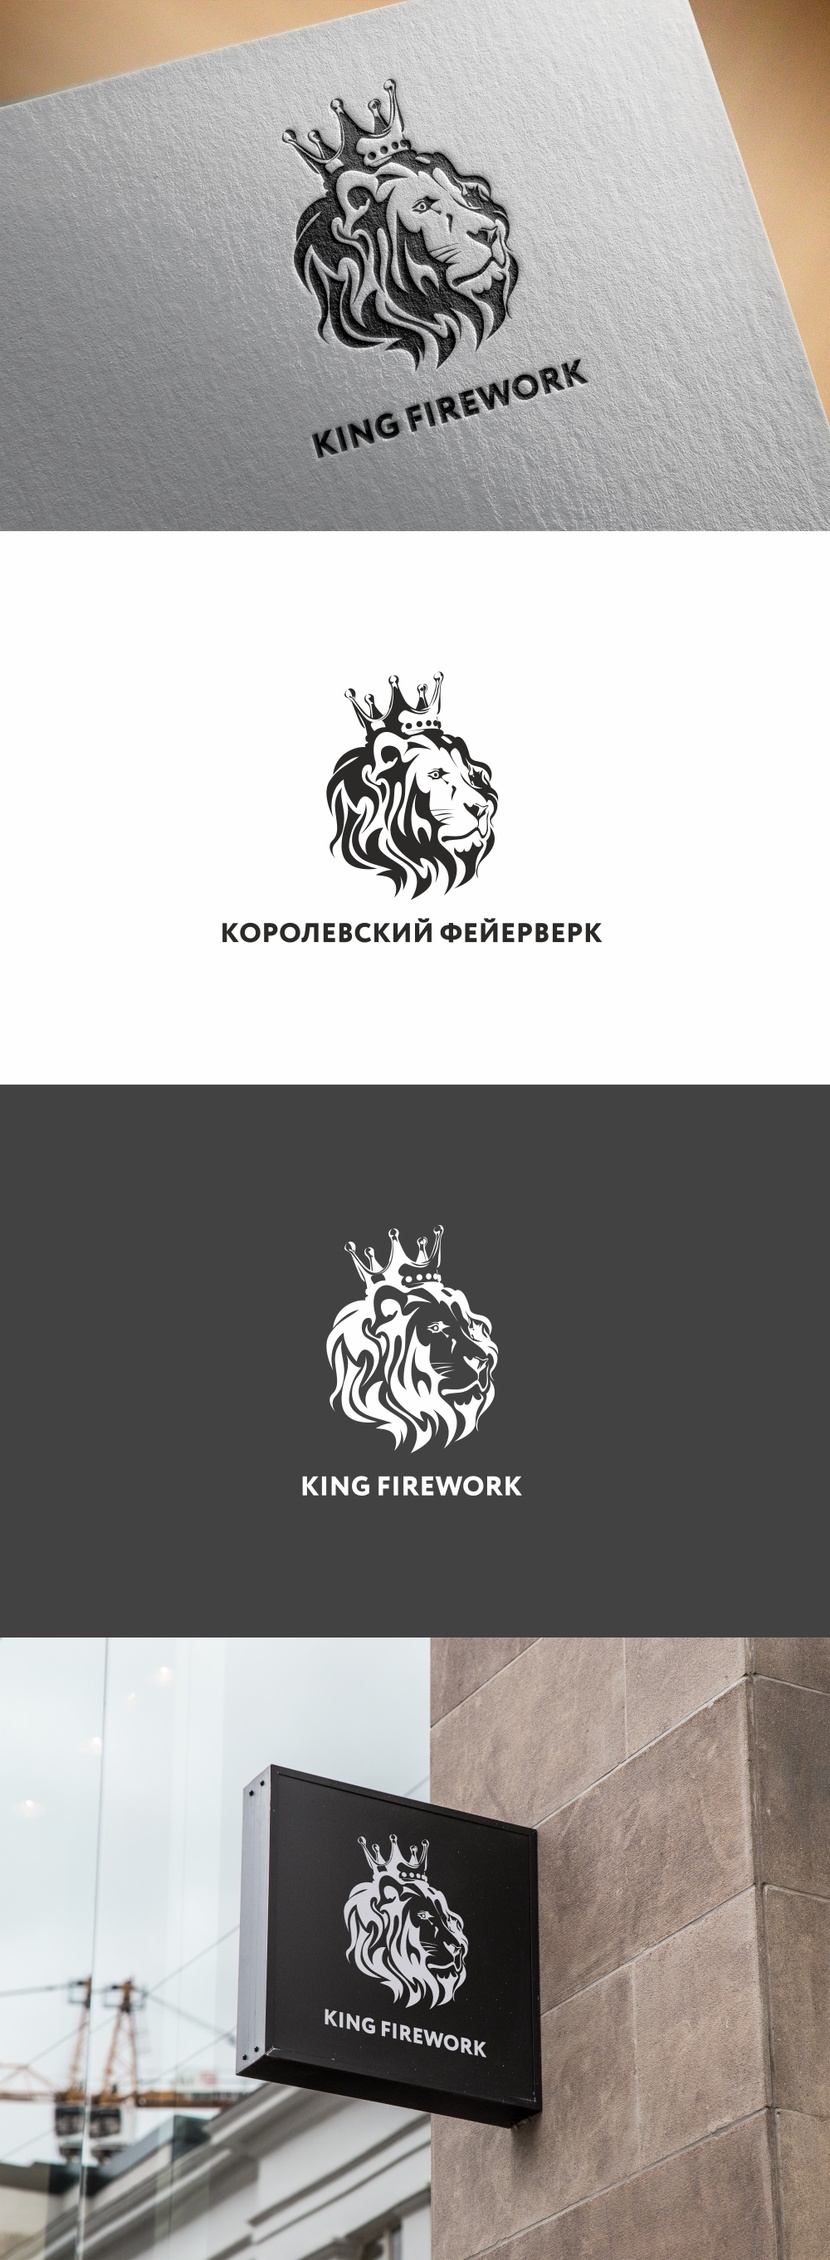 Разработка логотипа компании "Королевский фейерверк"  -  автор Андрей Мартынович